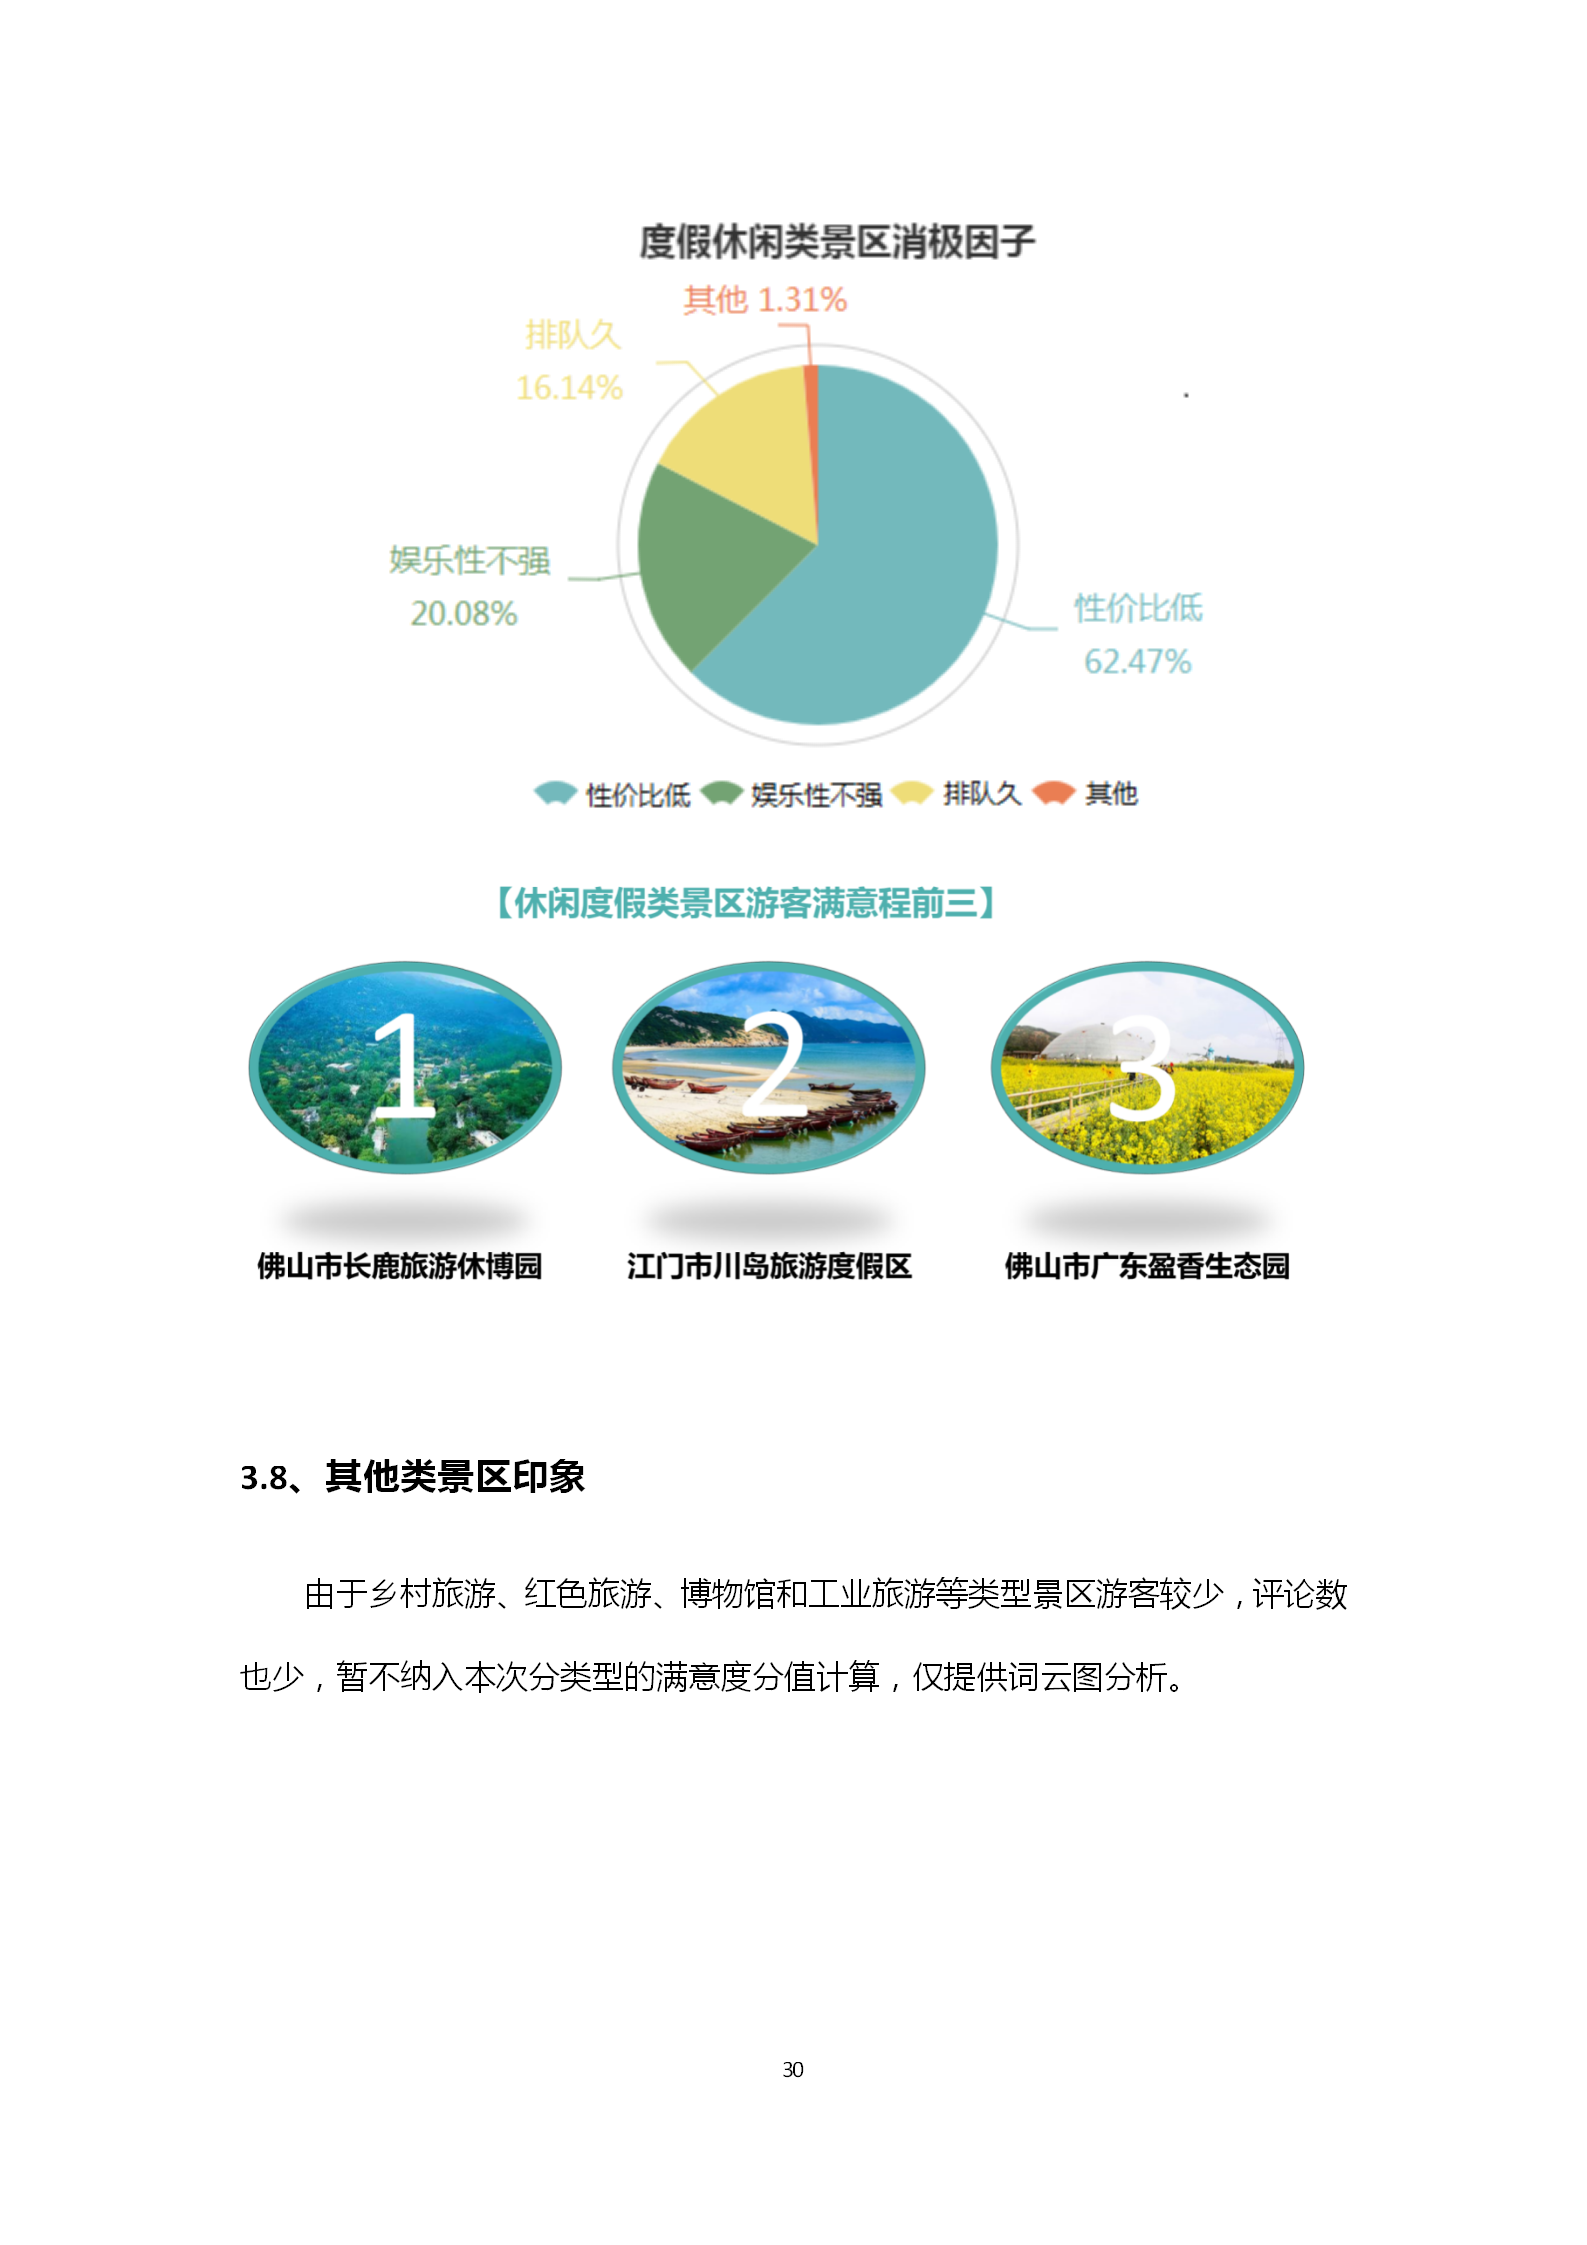 广东省旅游景区游客满意度大数据调查报告-2018年第三季度20181106_31